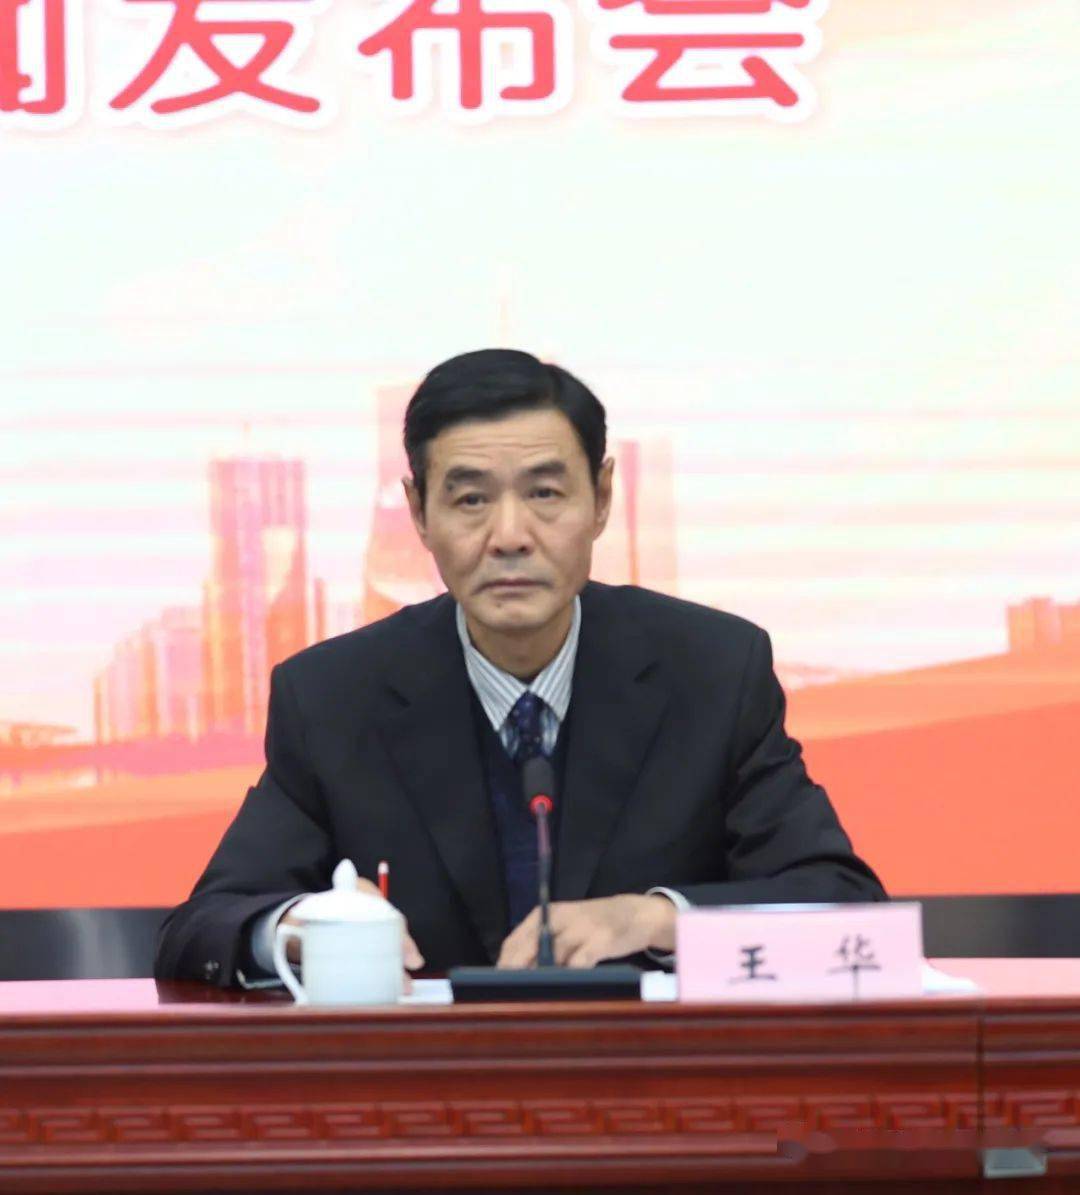 省农业农村厅副厅长王华人民数字记者:安徽是农村改革的发源地